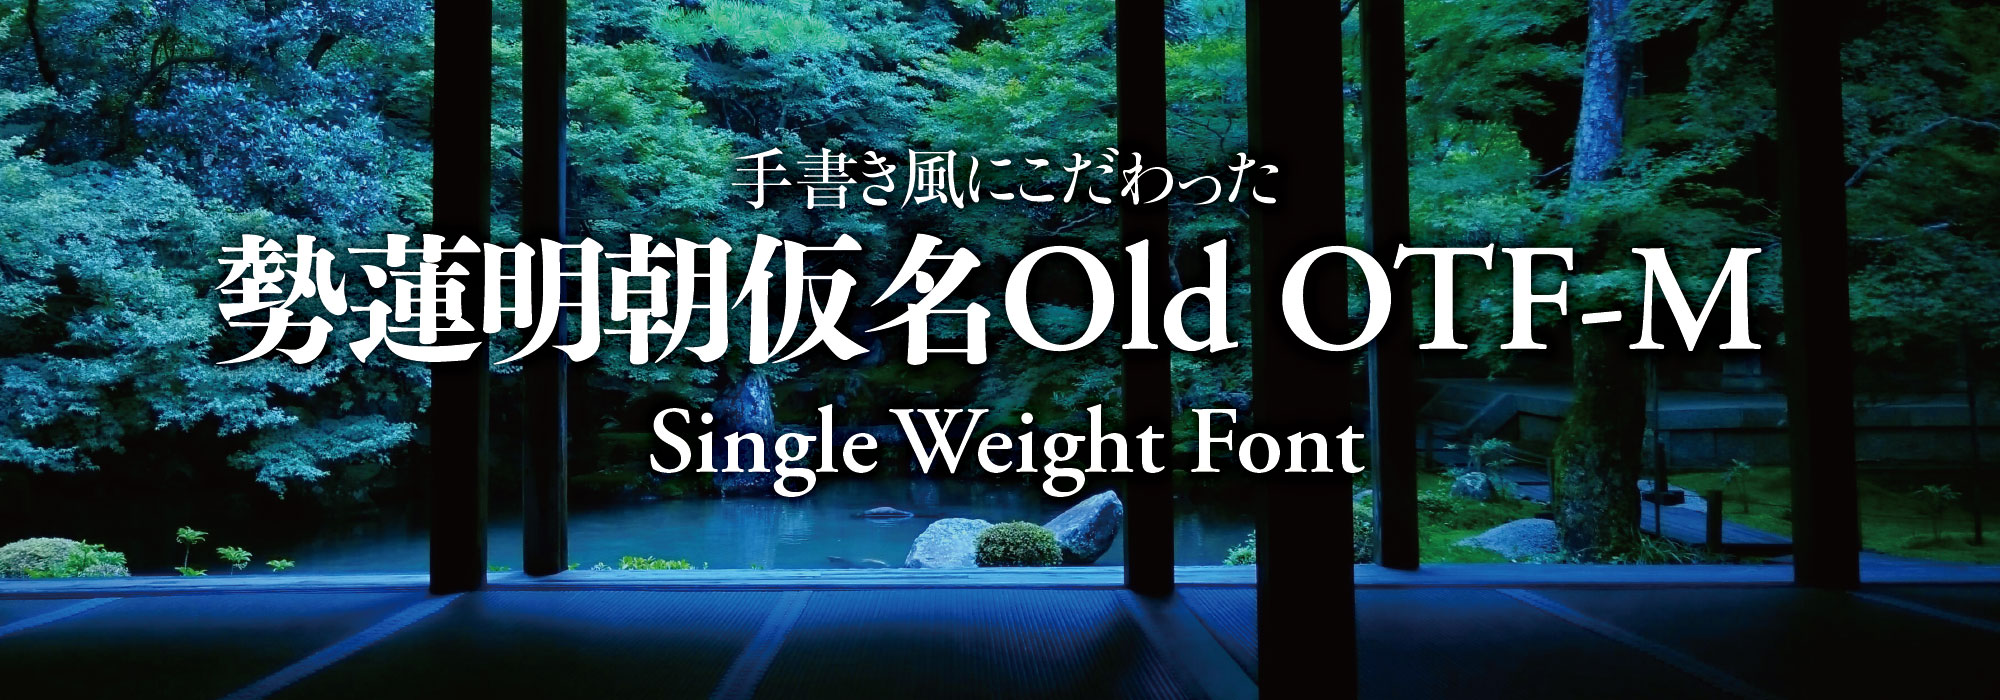 手書き風にこだわった 勢蓮明朝仮名Old OTF-M Single Weight Font